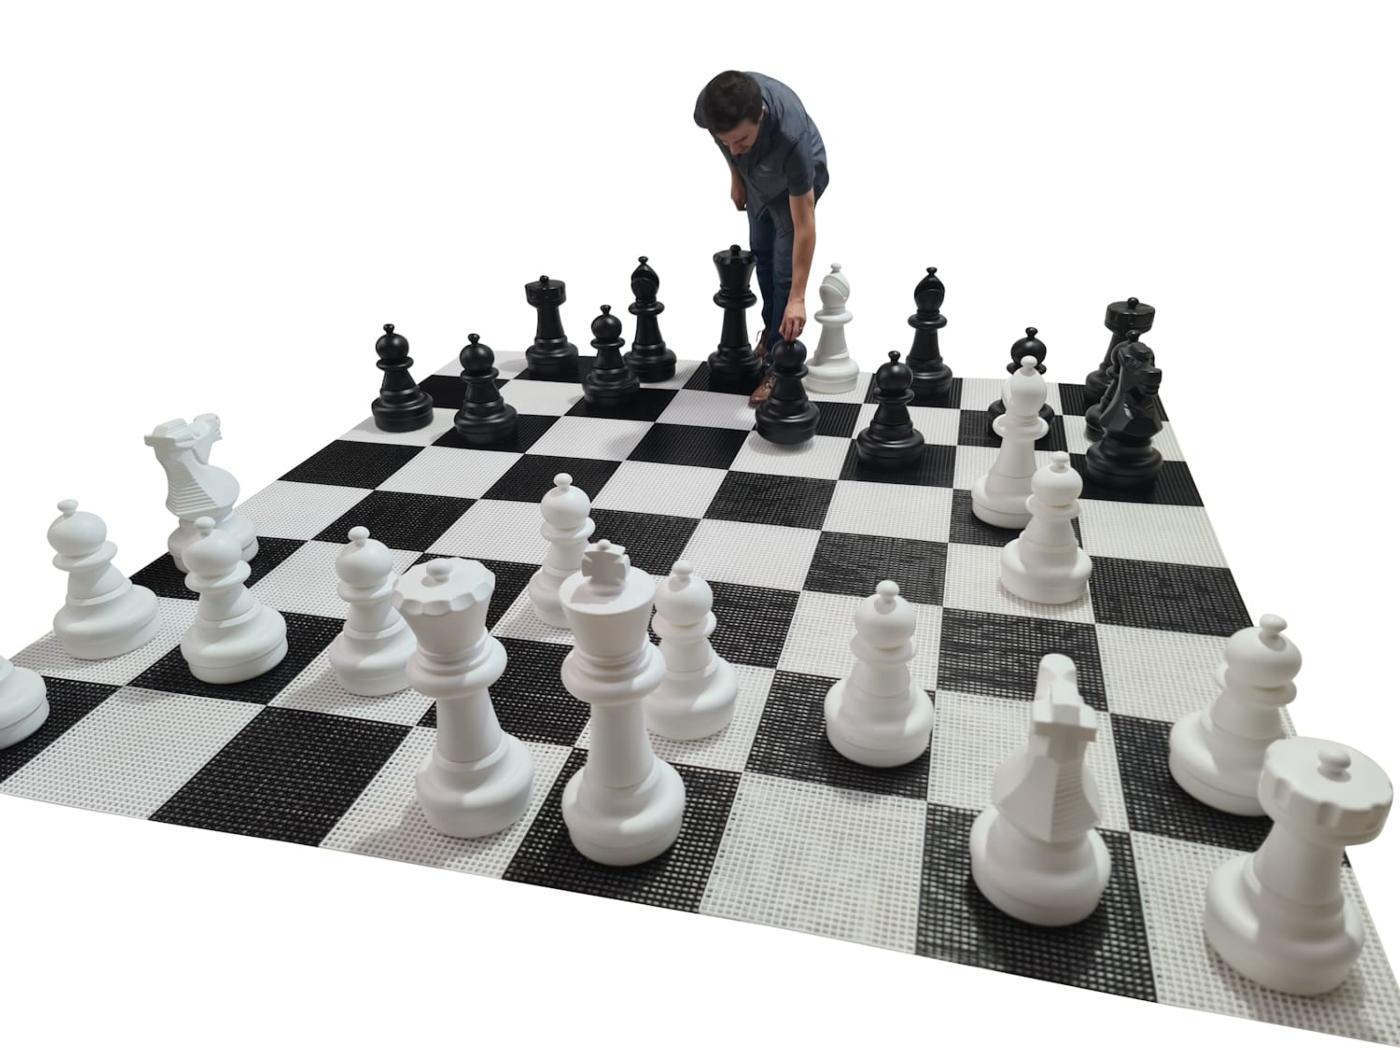 Que o xadrez é um jogo sujo, todo mundo sabe. Mas esse final